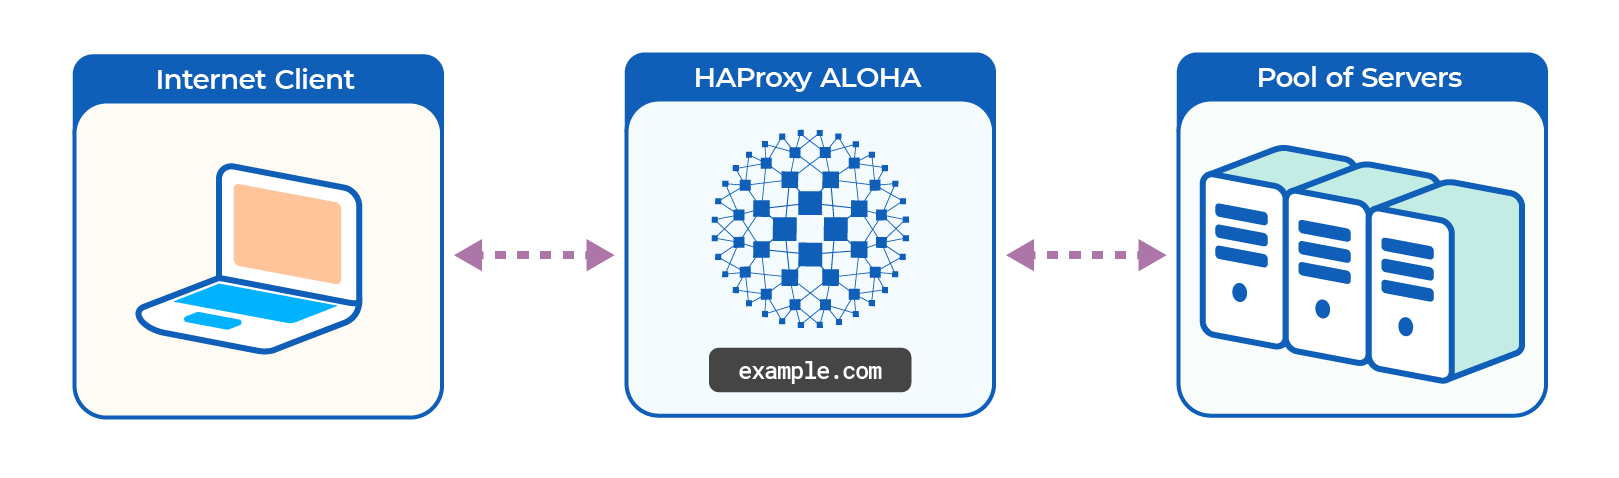 HAProxy ALOHA overview